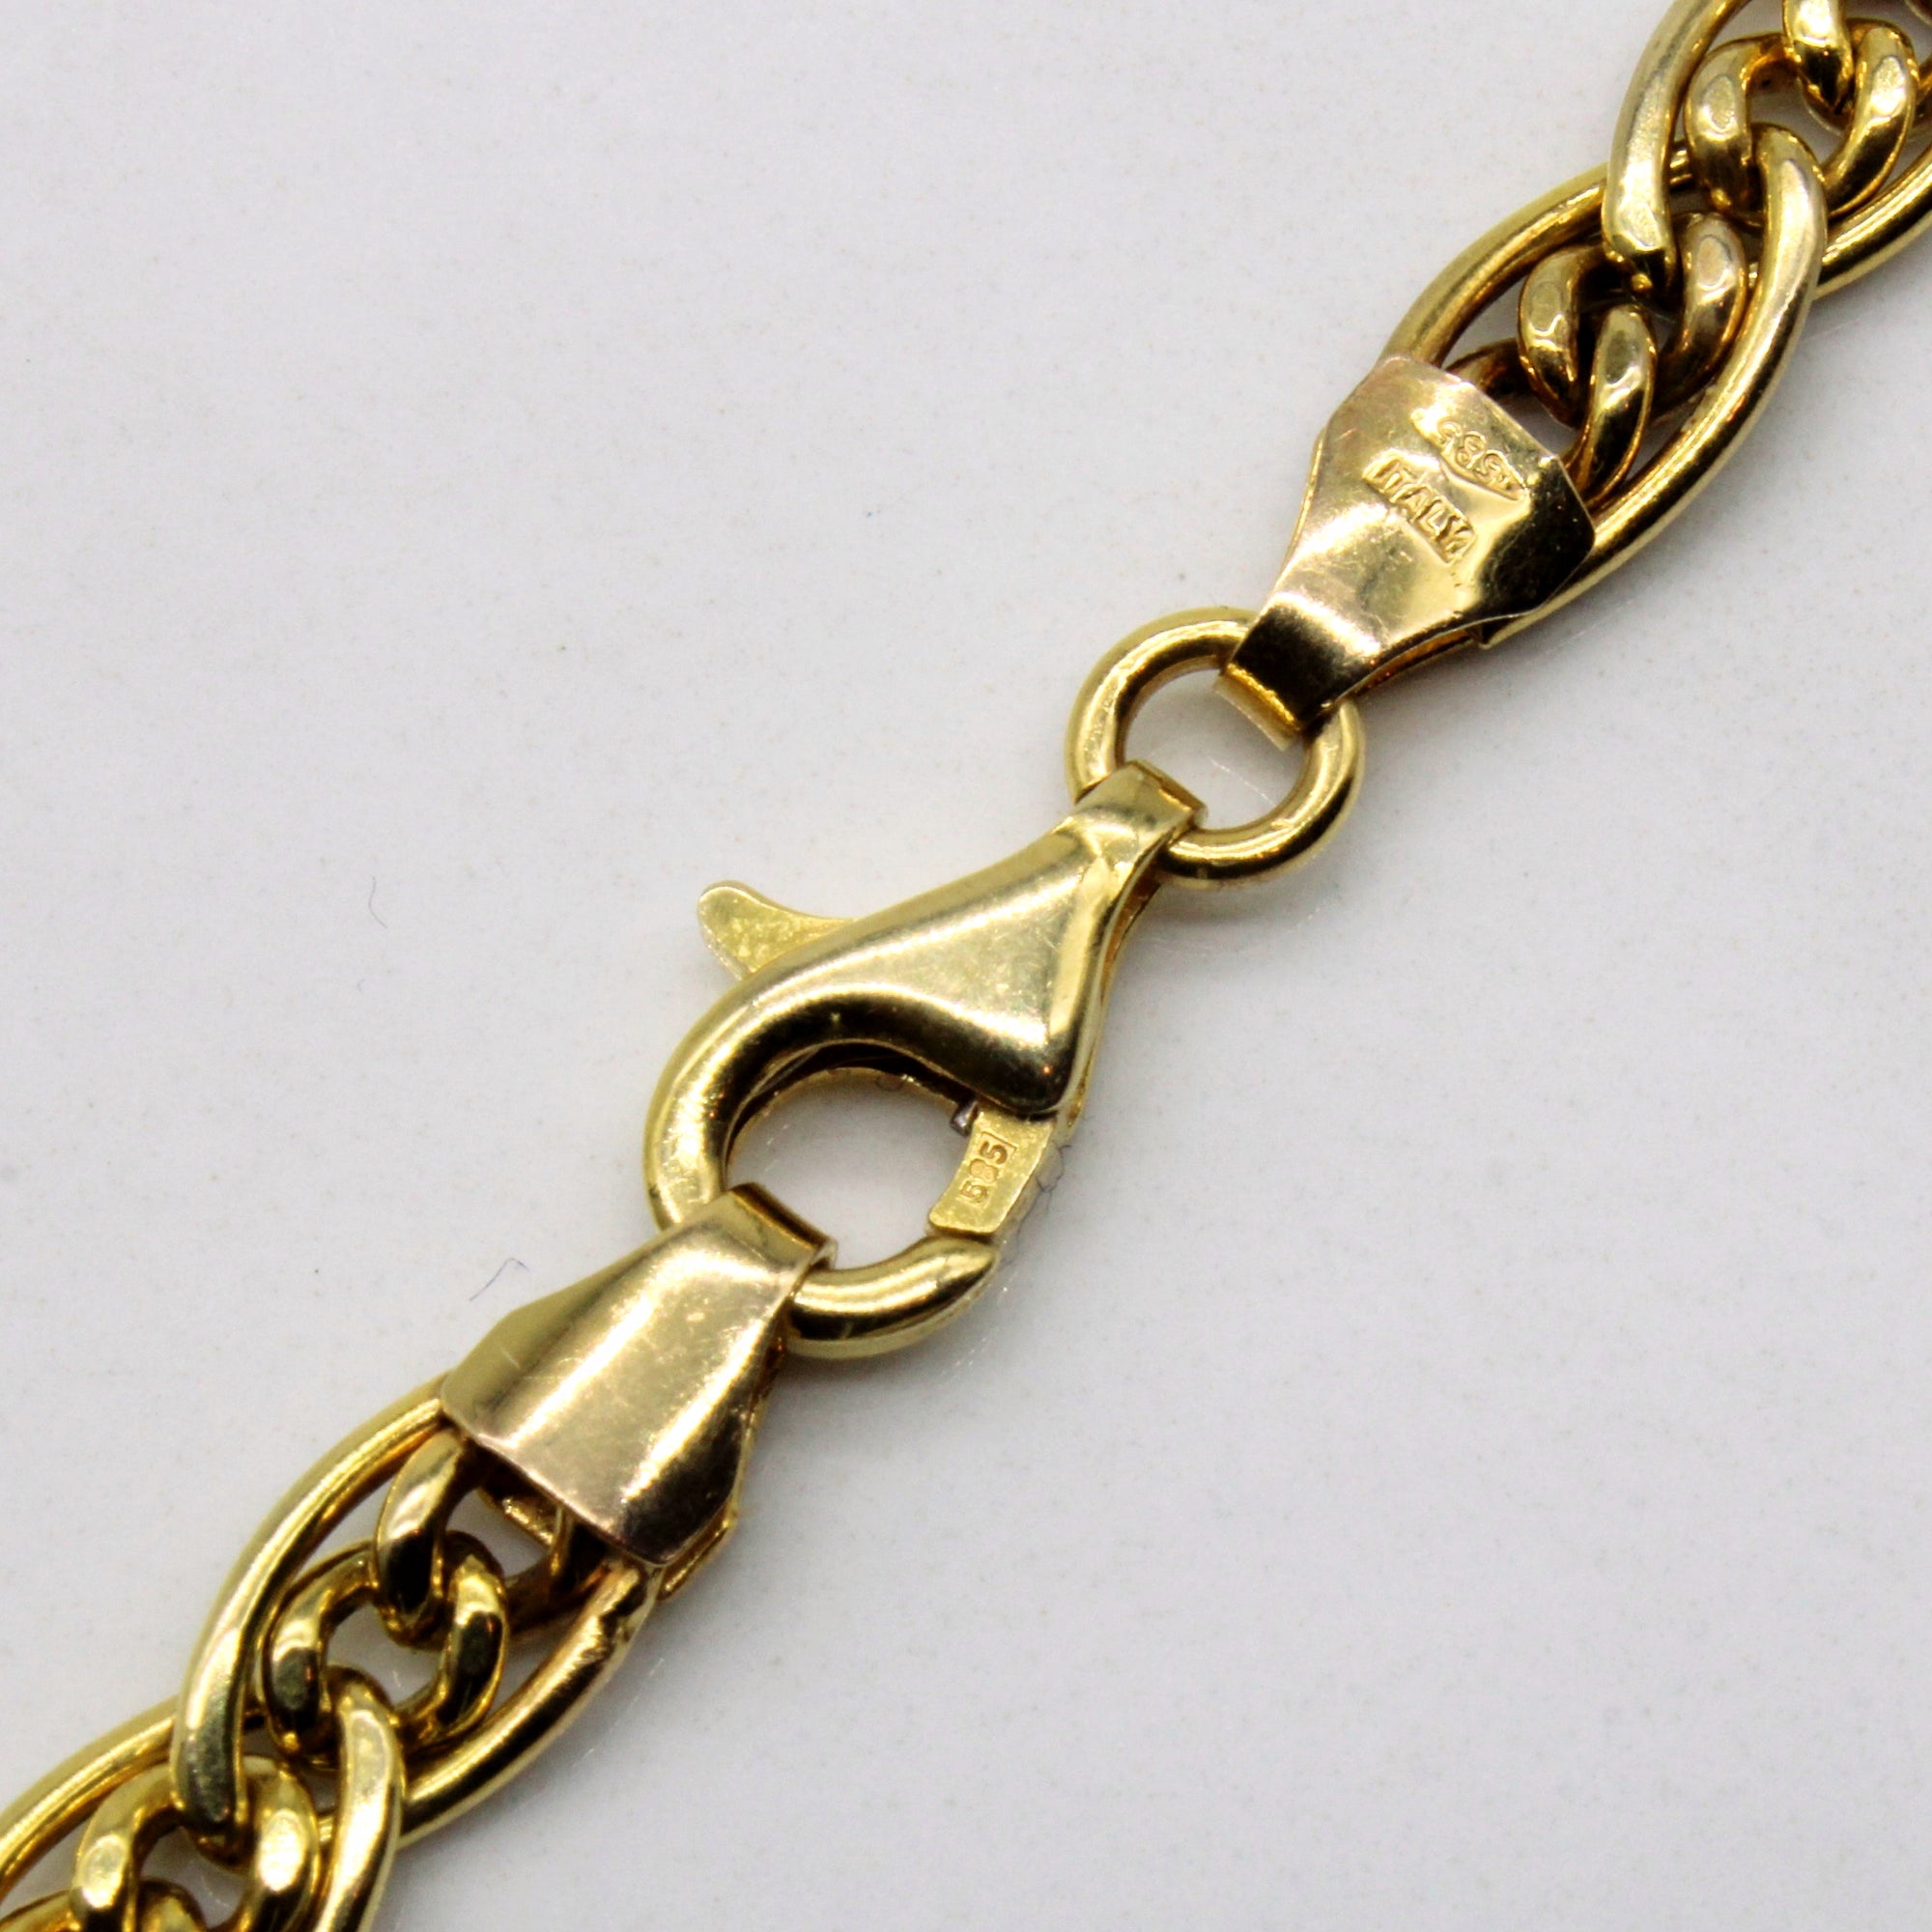 14k Yellow Gold Chain | 18